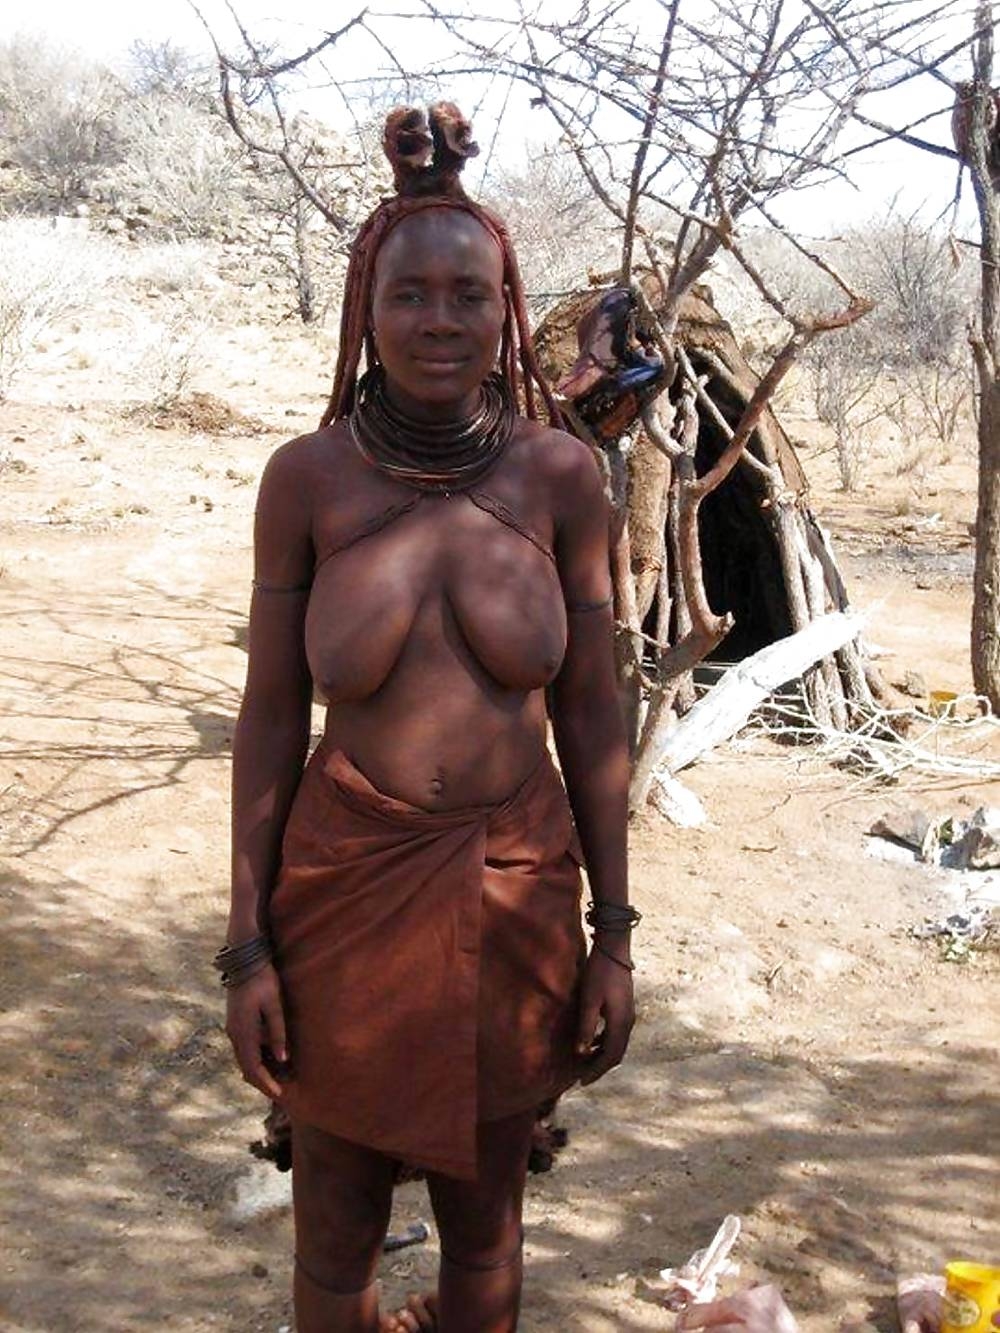 Порнуха про порно африканских дики племени - 1678 xXx видосов подходящих под запрос